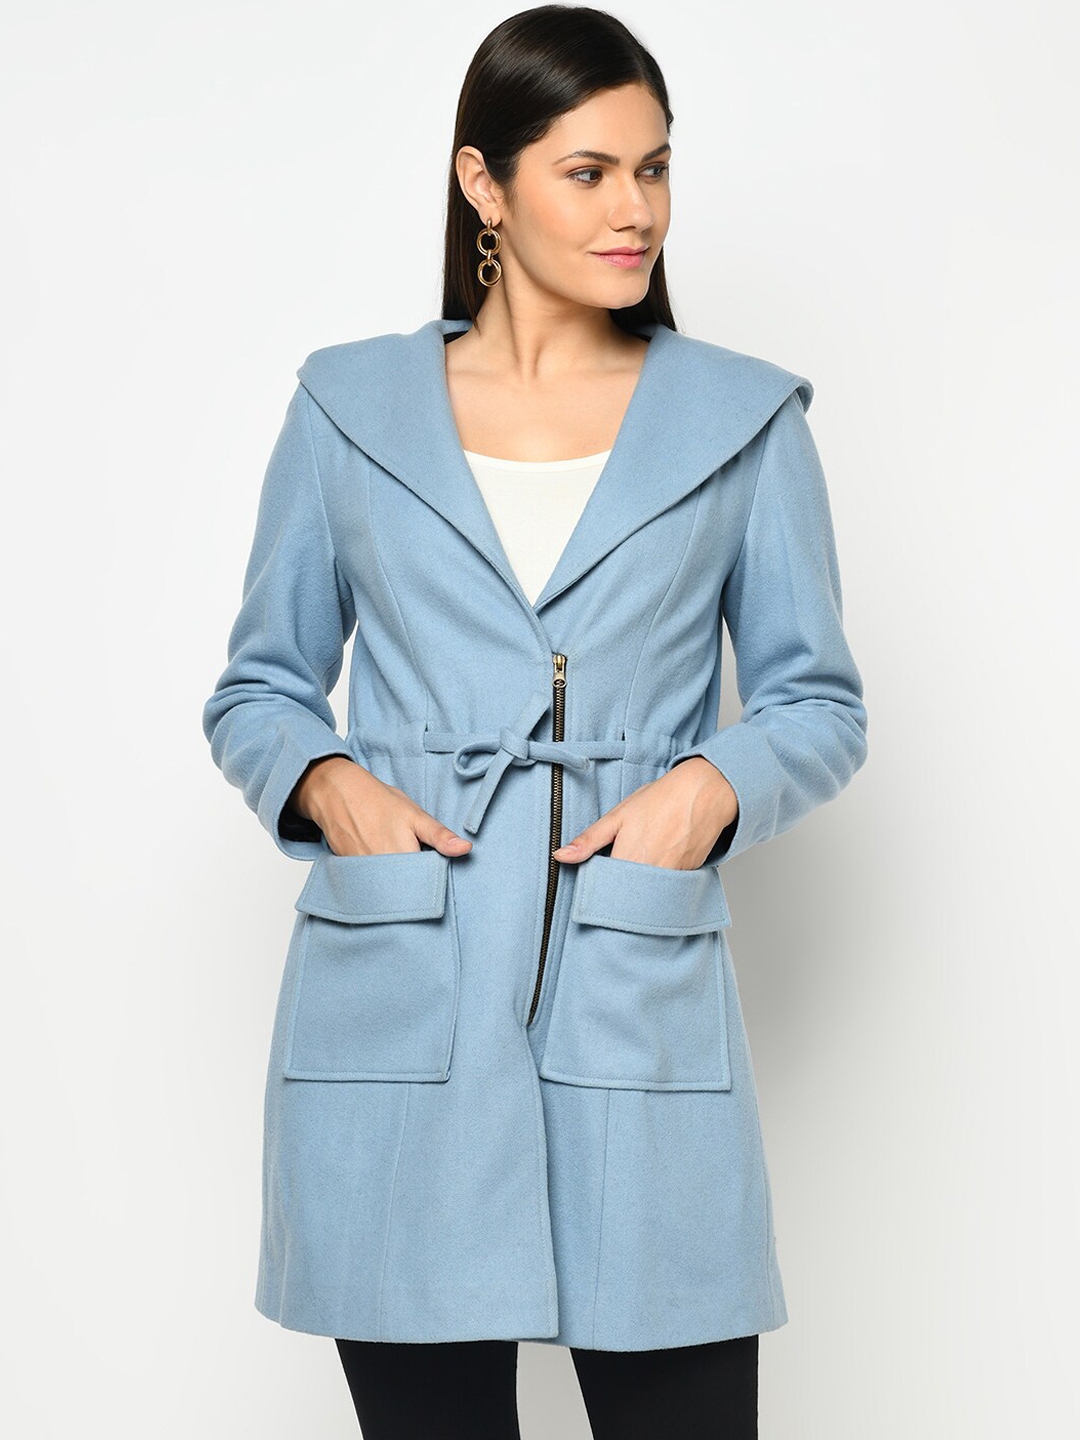 Owncraft Women Blue Solid Woolen Overcoat